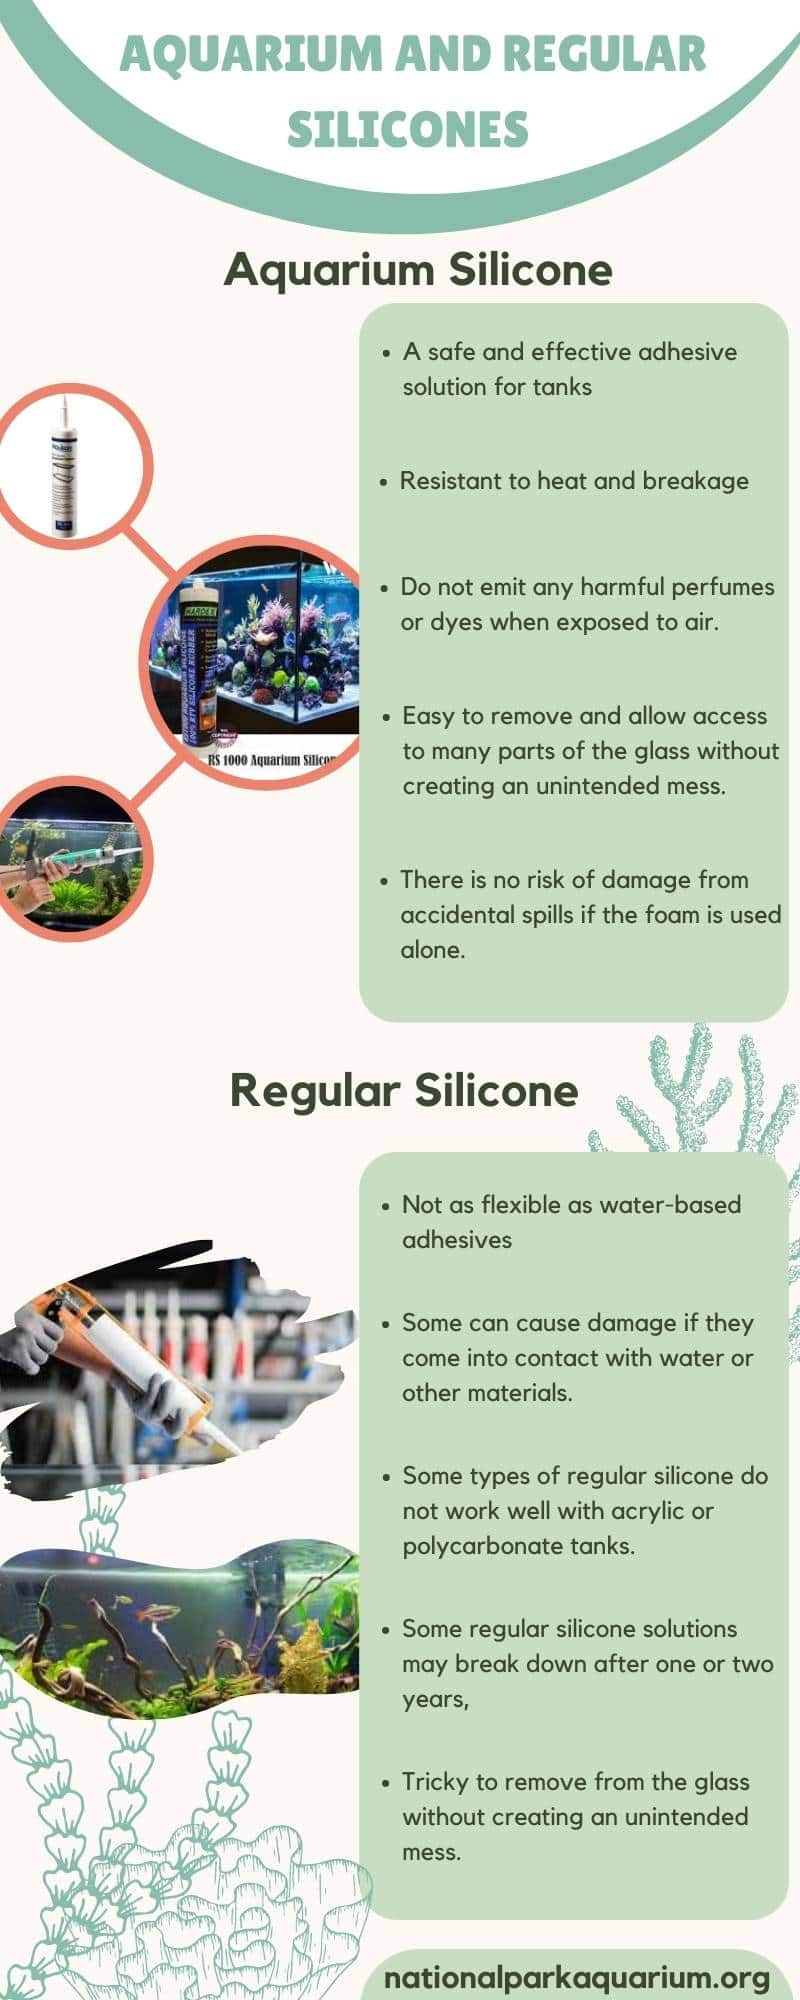 Differences Between Aquarium and Regular Silicones